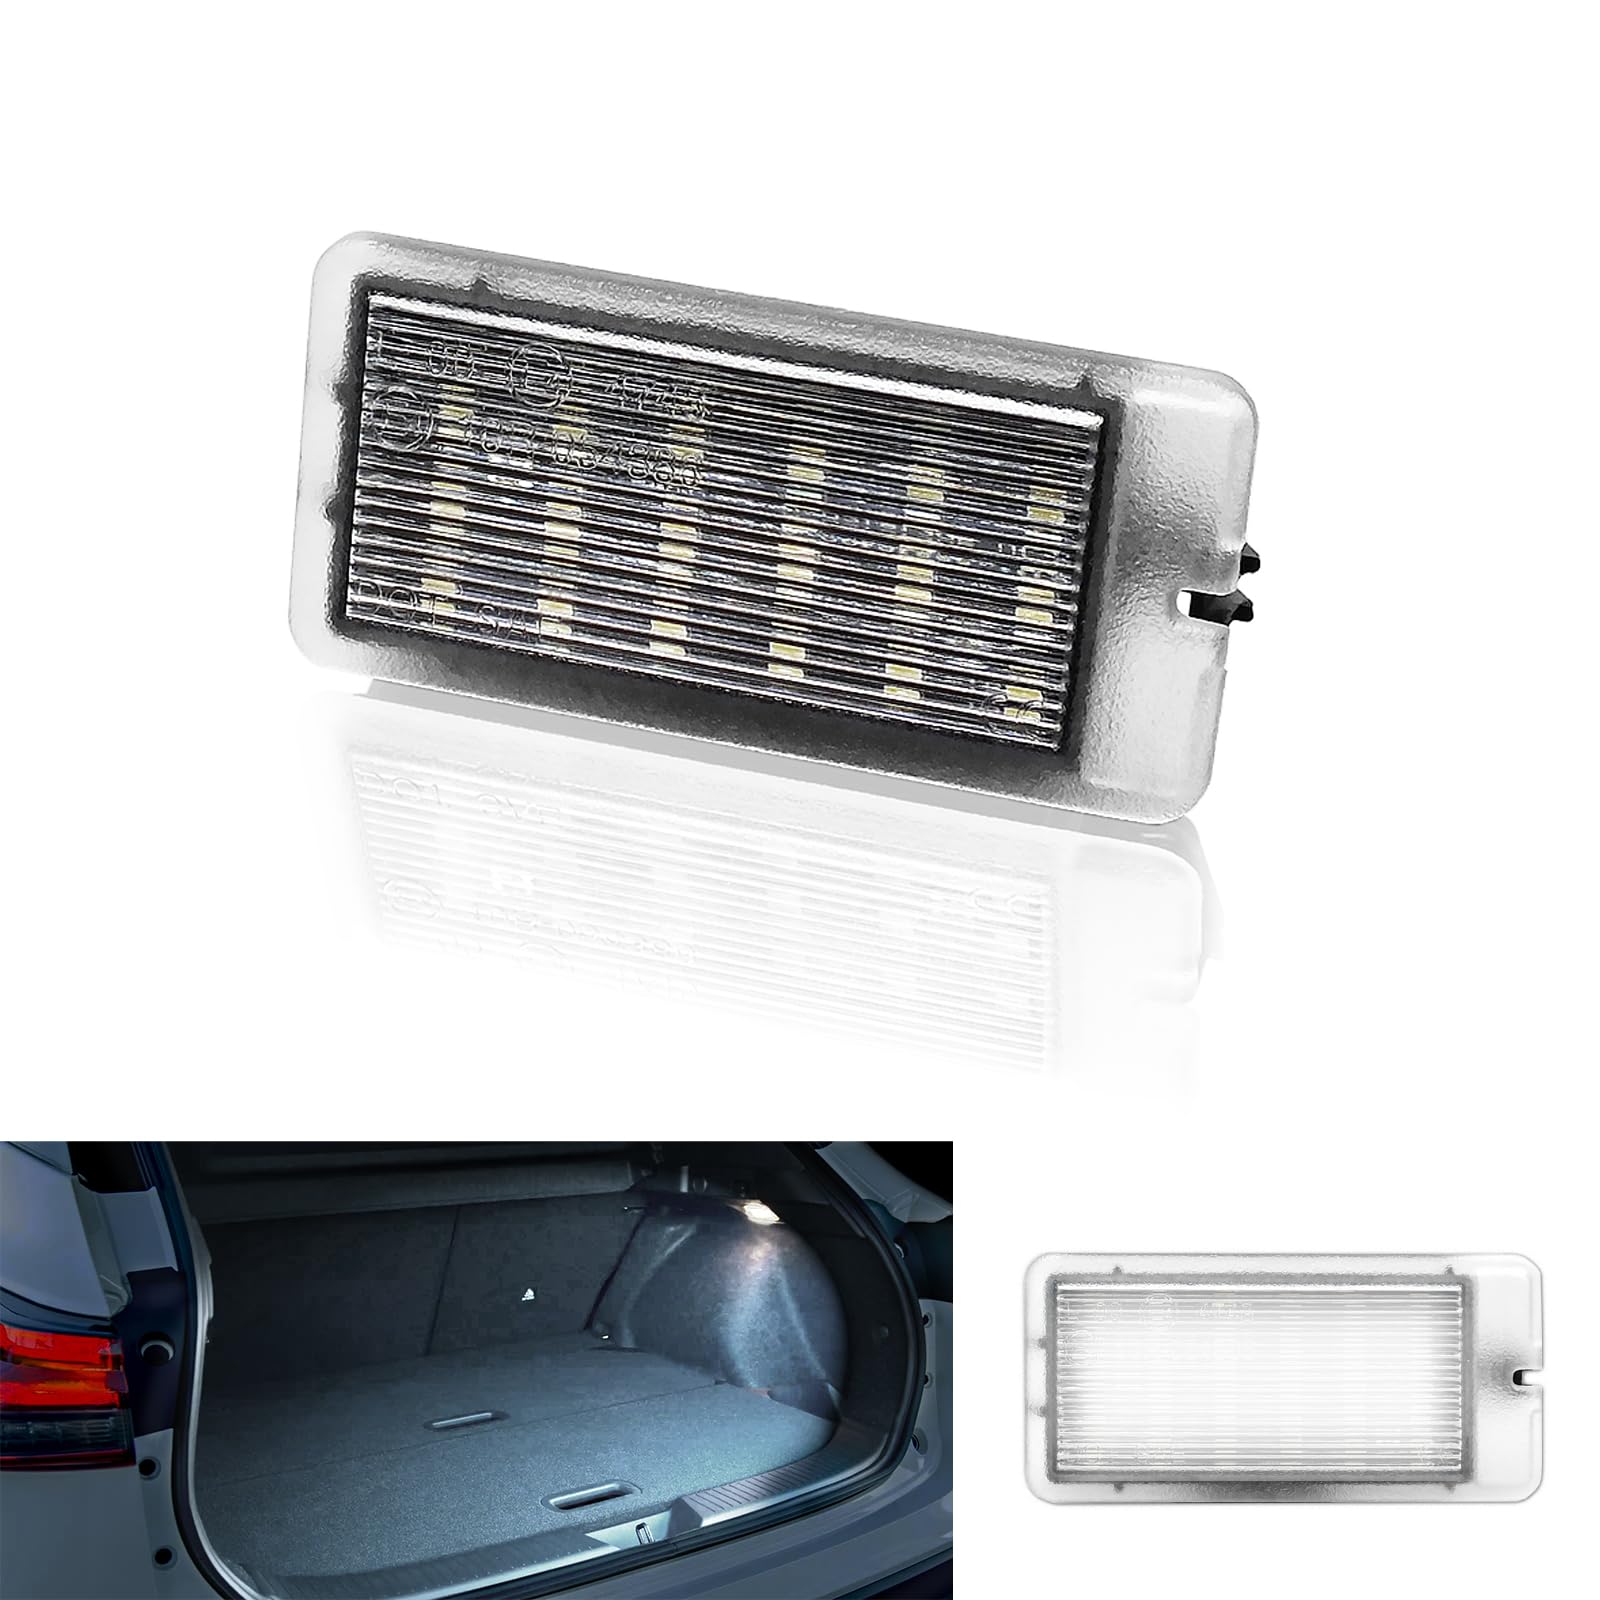 MTS Individual LED Kofferraumbeleuchtung Handschuhfachbeleuchtung Einstiegsbeleuchtung Interieur Innenraum Tür Leuchte Lampe Ambiente 6000K Kaltweiss (Passend für Nissan Juke Qashqai Micra) von MTS Individual